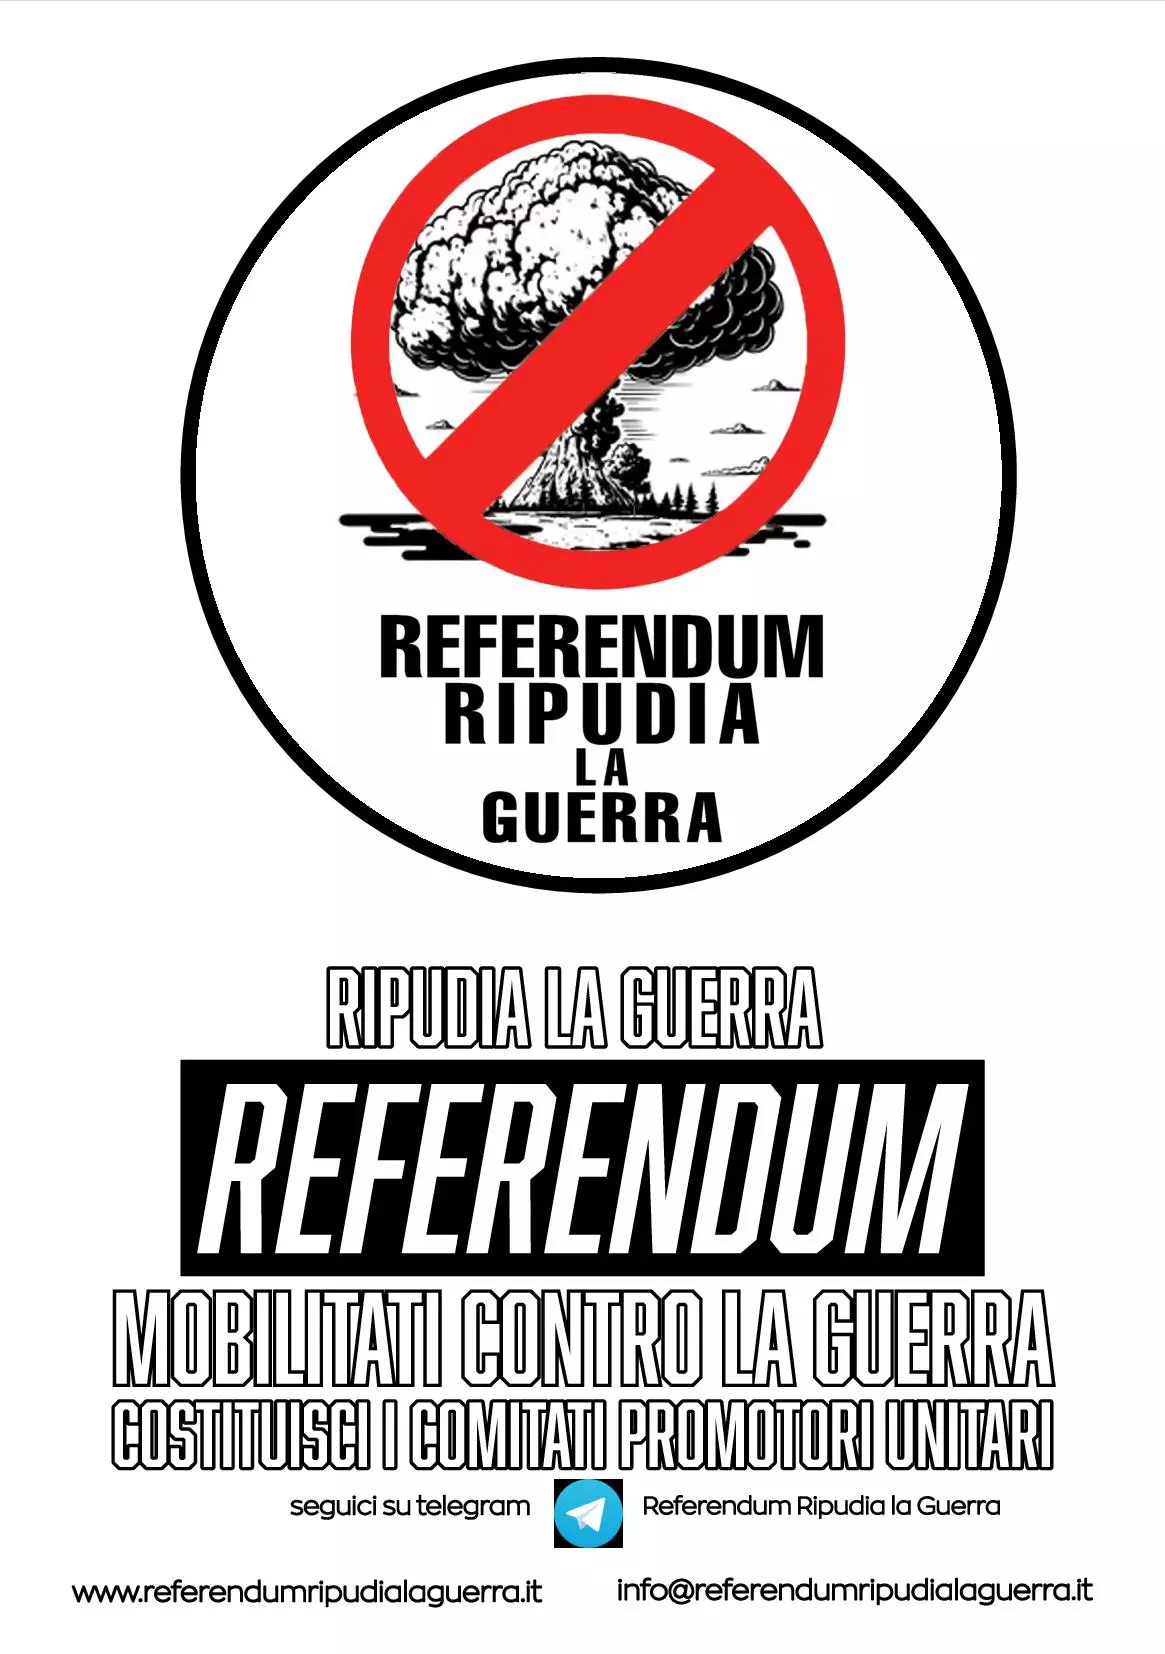 Referendum Ripudia la guerra